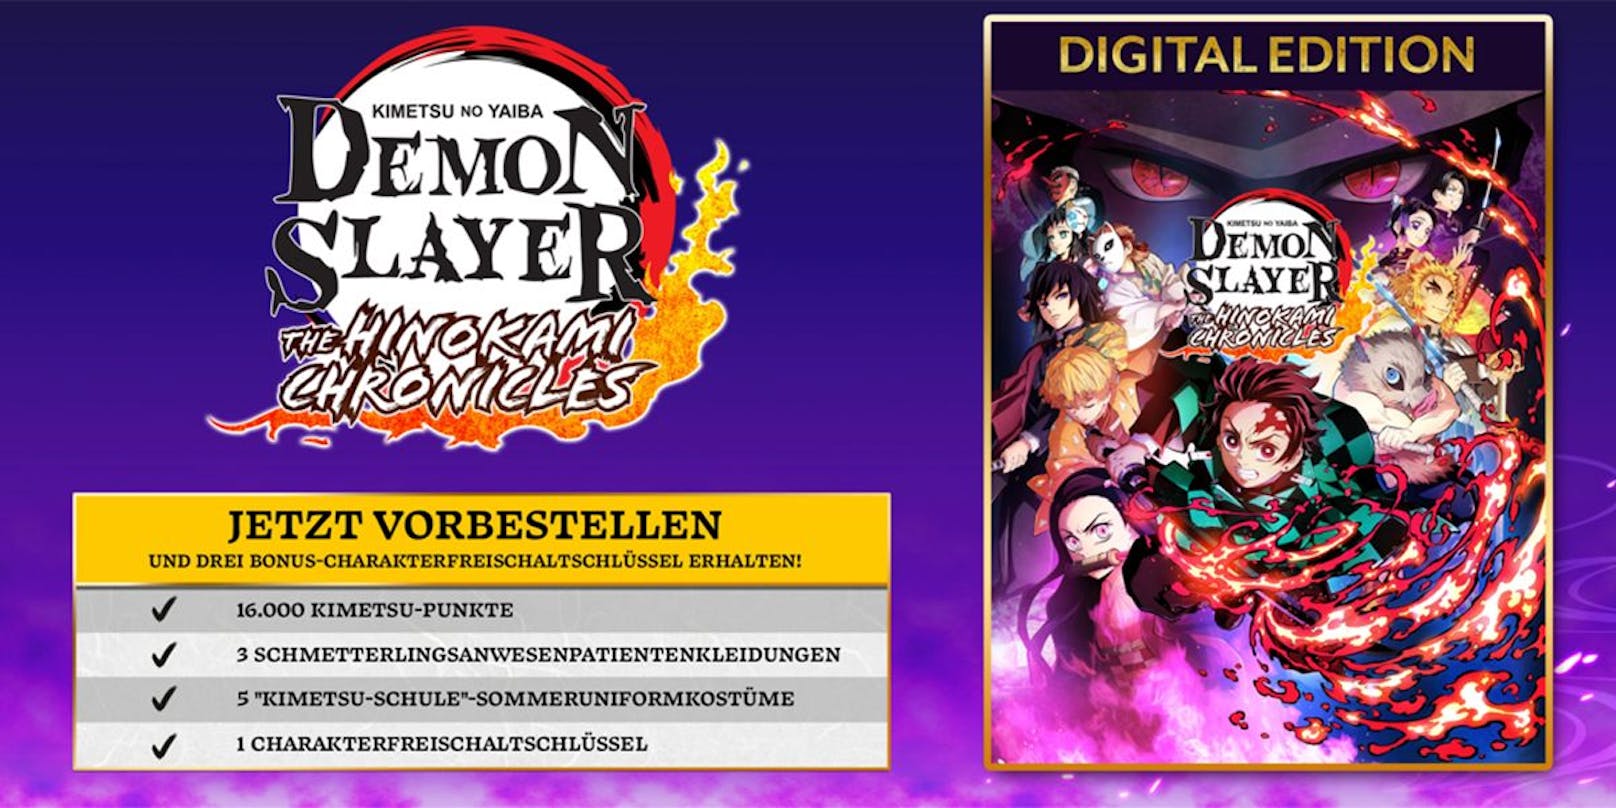 DLC "Zusätzliches Charakterpaket" für "Demon Slayer -Kimetsu no Yaiba- The Hinokami Chronicles" erscheint im Sommer 2022.